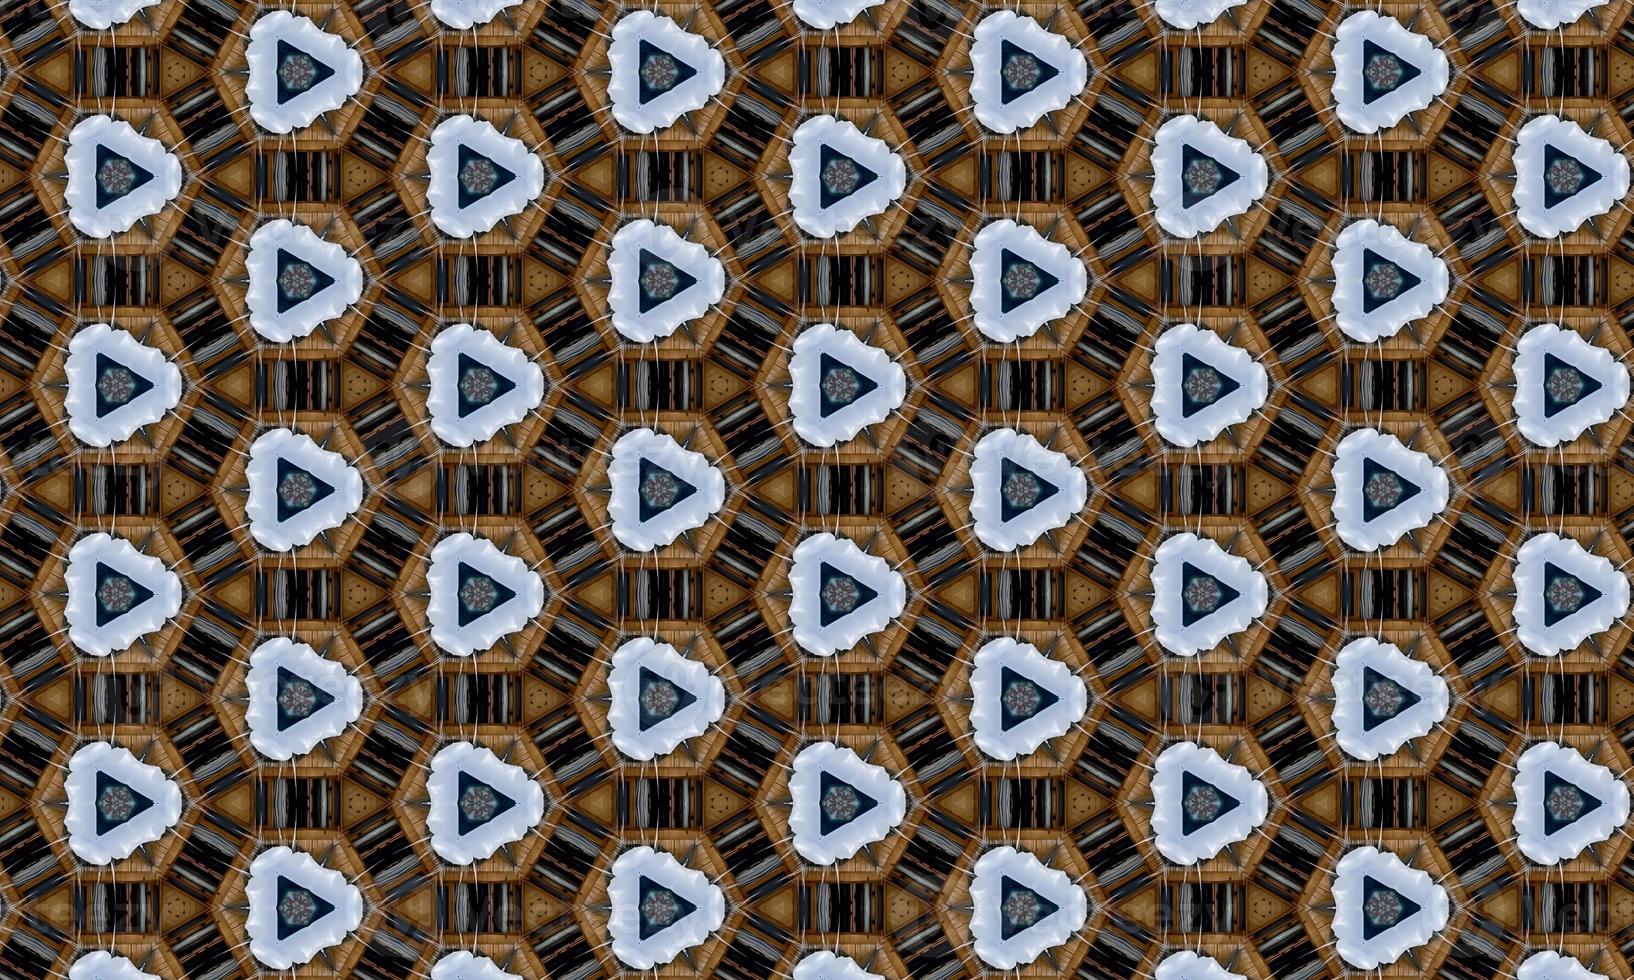 caleidoscopio de patrón de mosaico multicolor. fondo, textura. ilustración de alta calidad foto